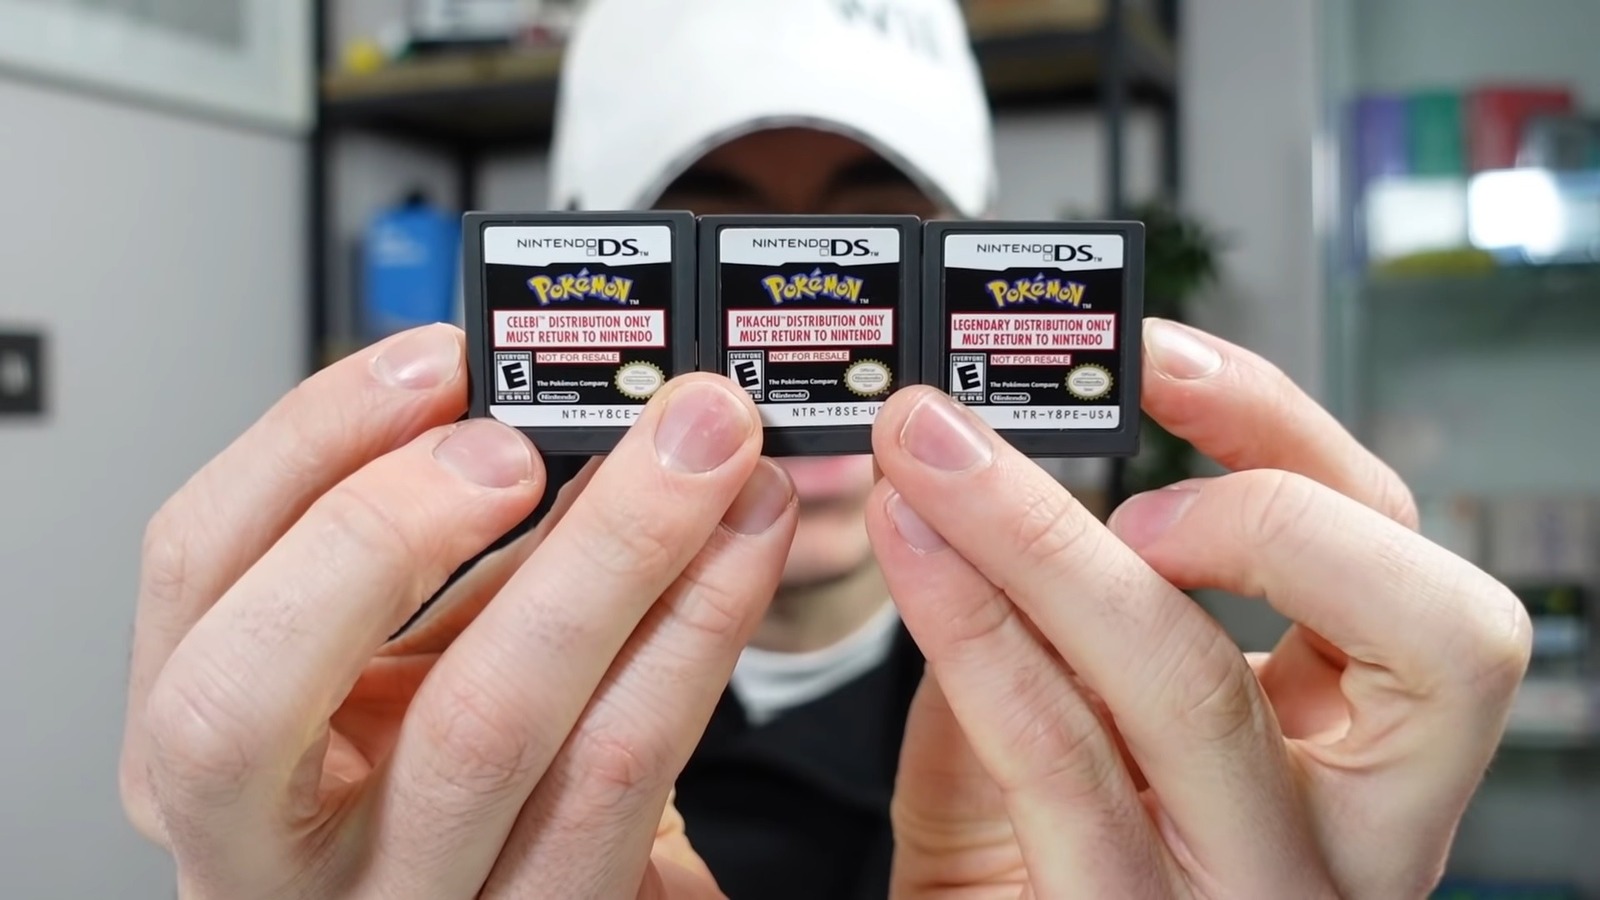 Nintendo Giving Away Special Rare Pokemon